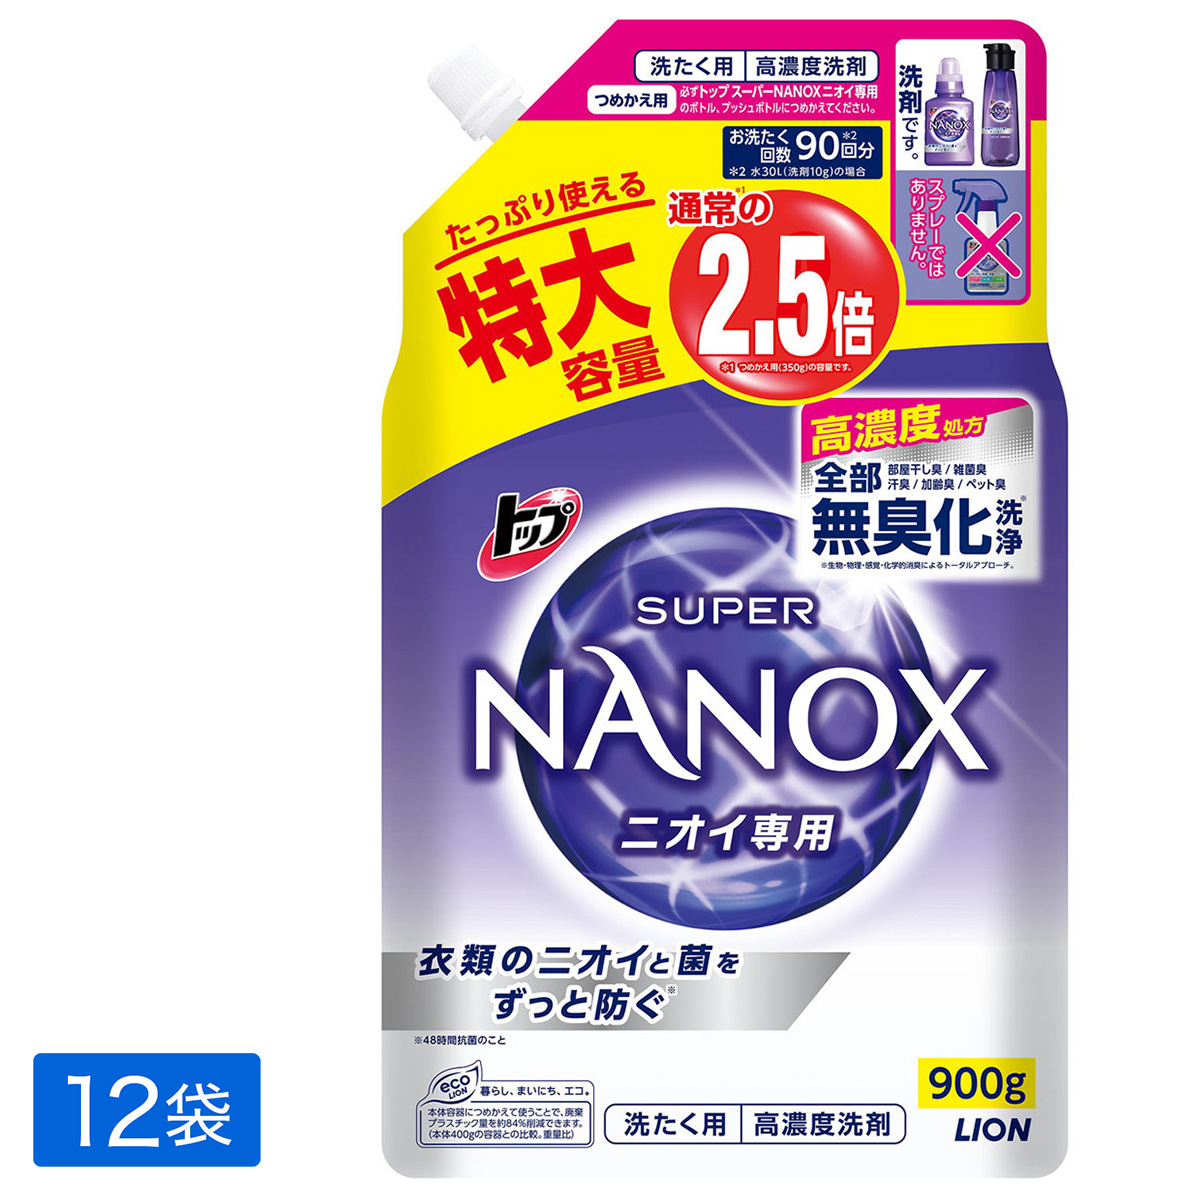 ひかりＴＶショッピング | トップ スーパーNANOX ナノックス ニオイ